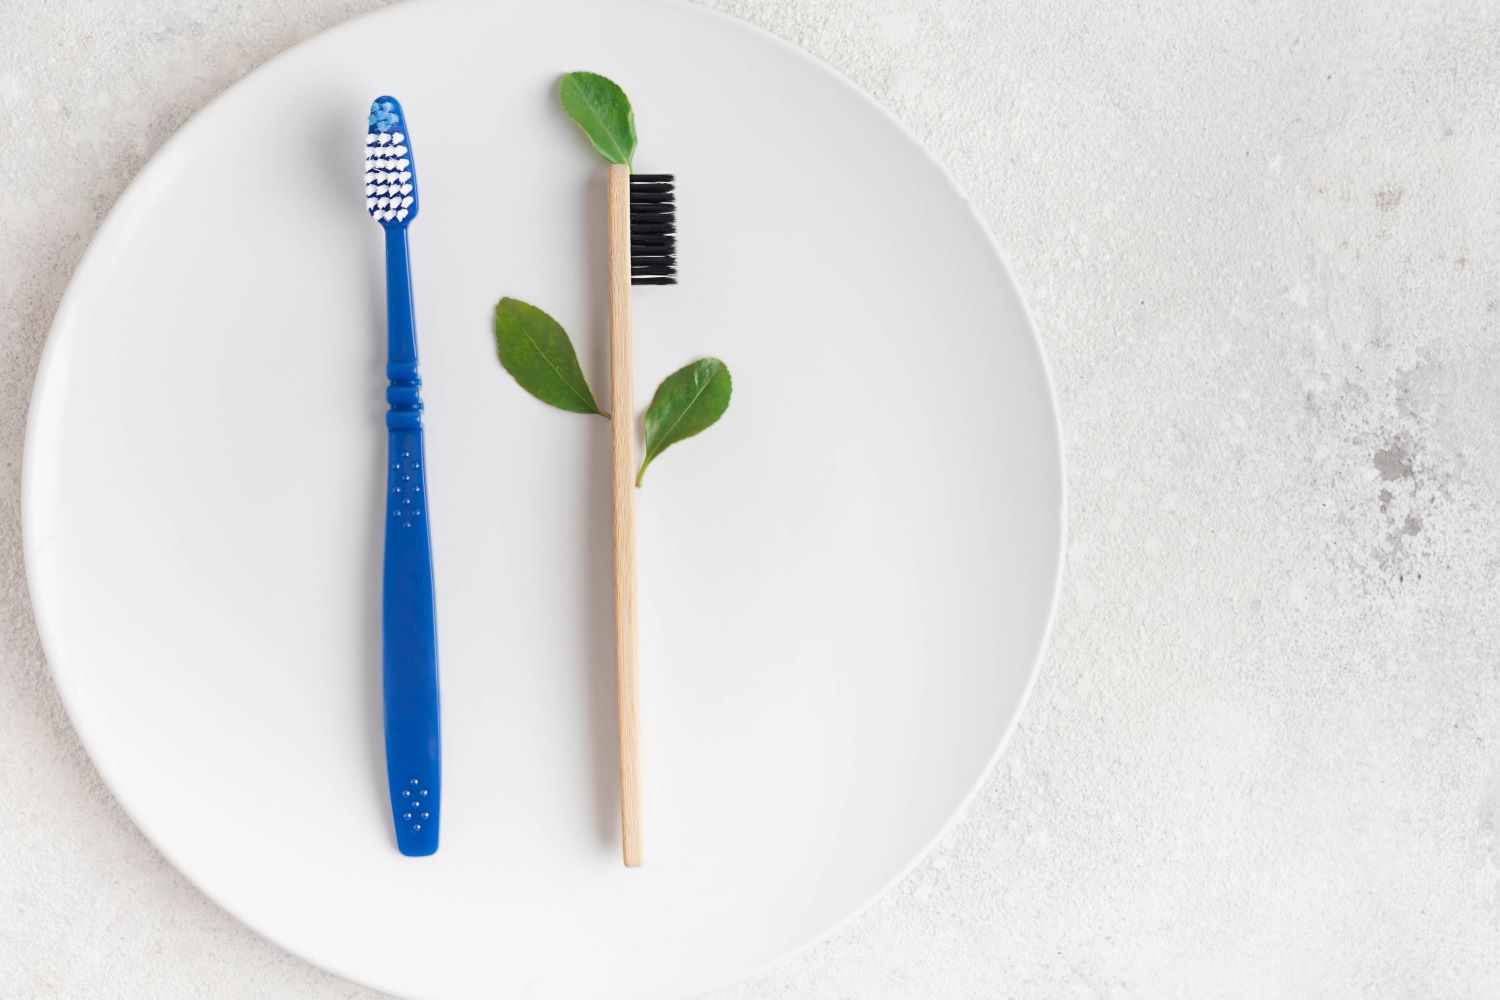 ชุดแปรงสีฟันยาสีฟันโรงแรมรักษ์โลก สามารถช่วยสิ่งแวดล้อมได้จริงหรือ? 